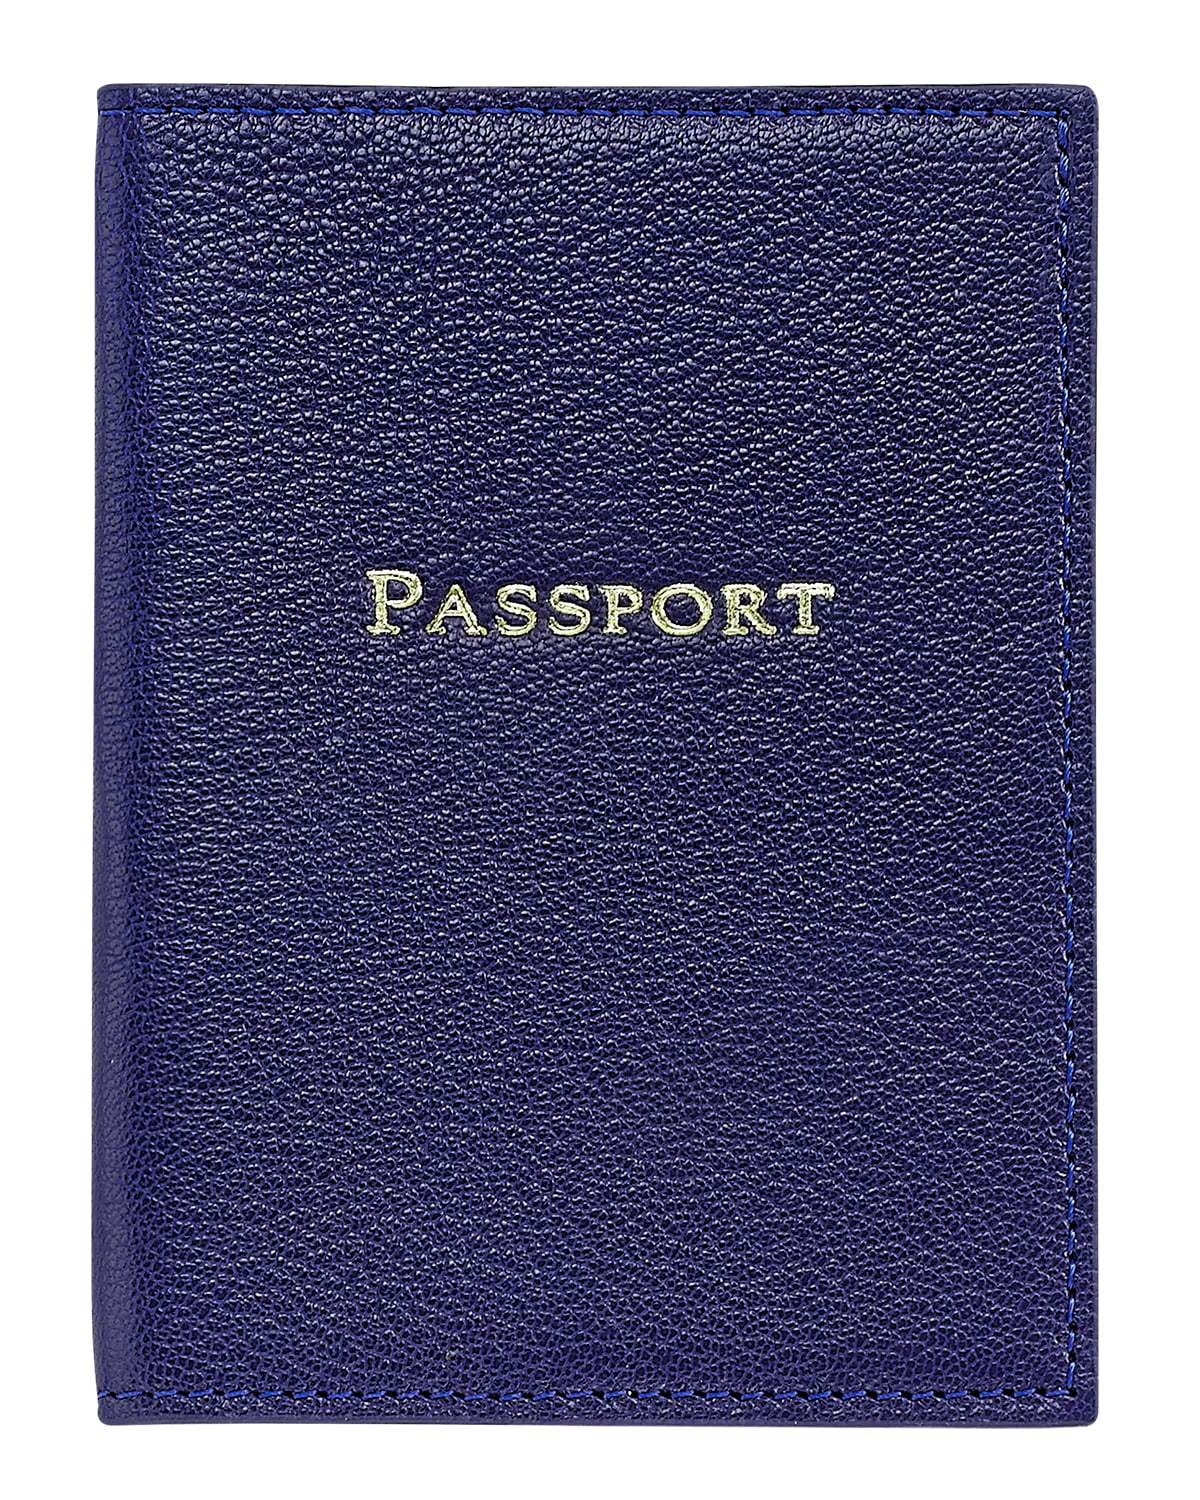 Graphic Image Passport Cover In Indigo